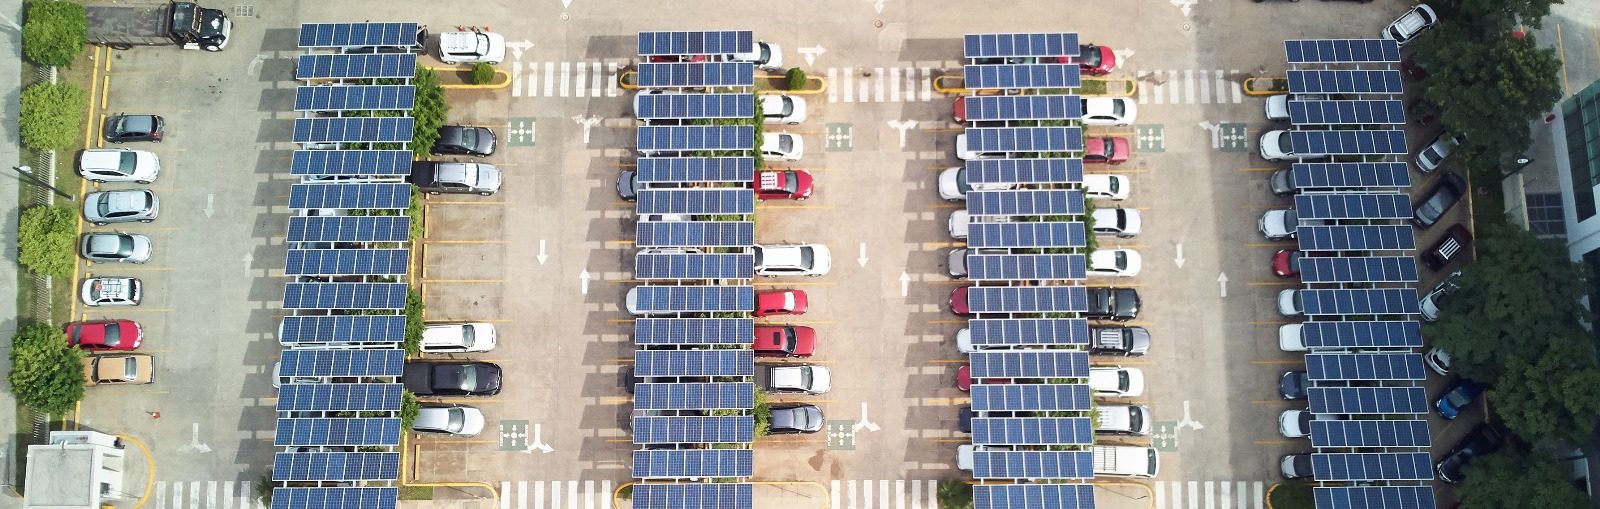 installation photovoltaïque comme les ombrières de parking